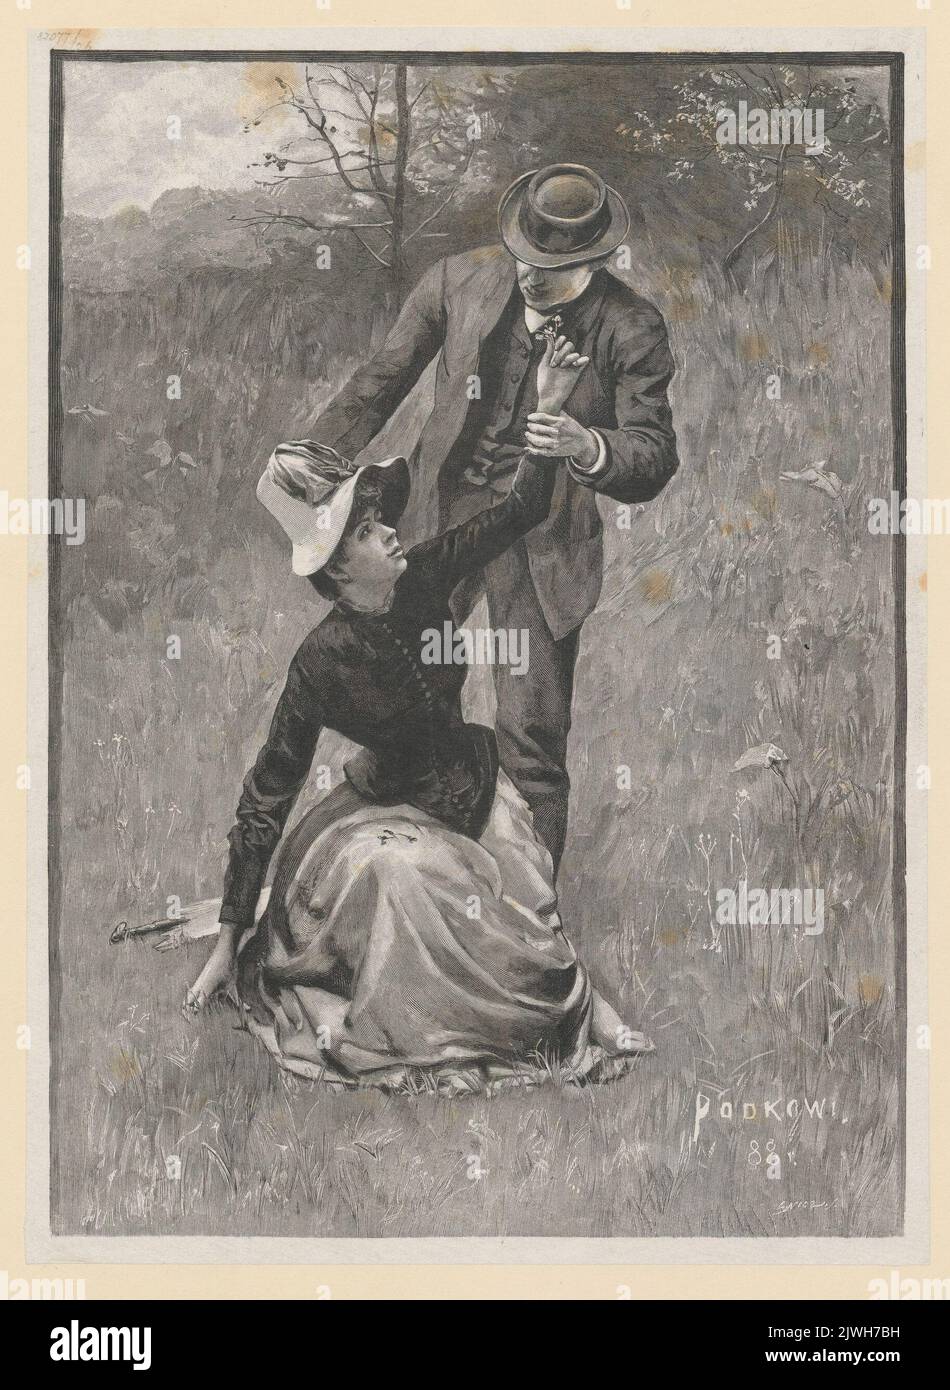 Pierwsze fiołki. Nicz, Edward (1851-1916), graphiste, Podkowiński, Władysław (1866-1895), rapporteur pour avis, caricaturiste Banque D'Images